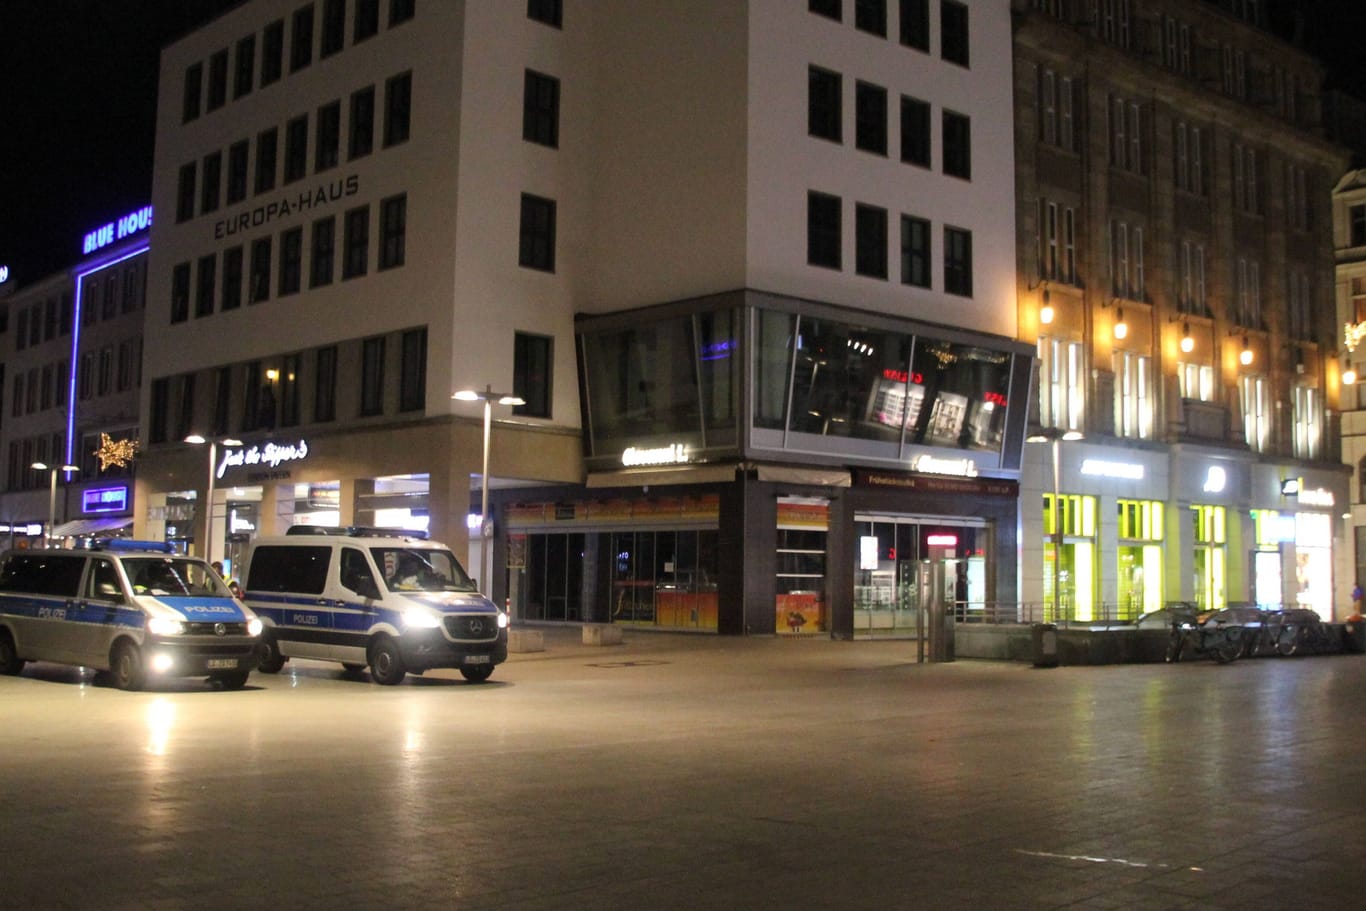 Hannover bei Nacht (Archivbild): In der Innenstadt fühlen sich viele Einwohner nicht sicher.